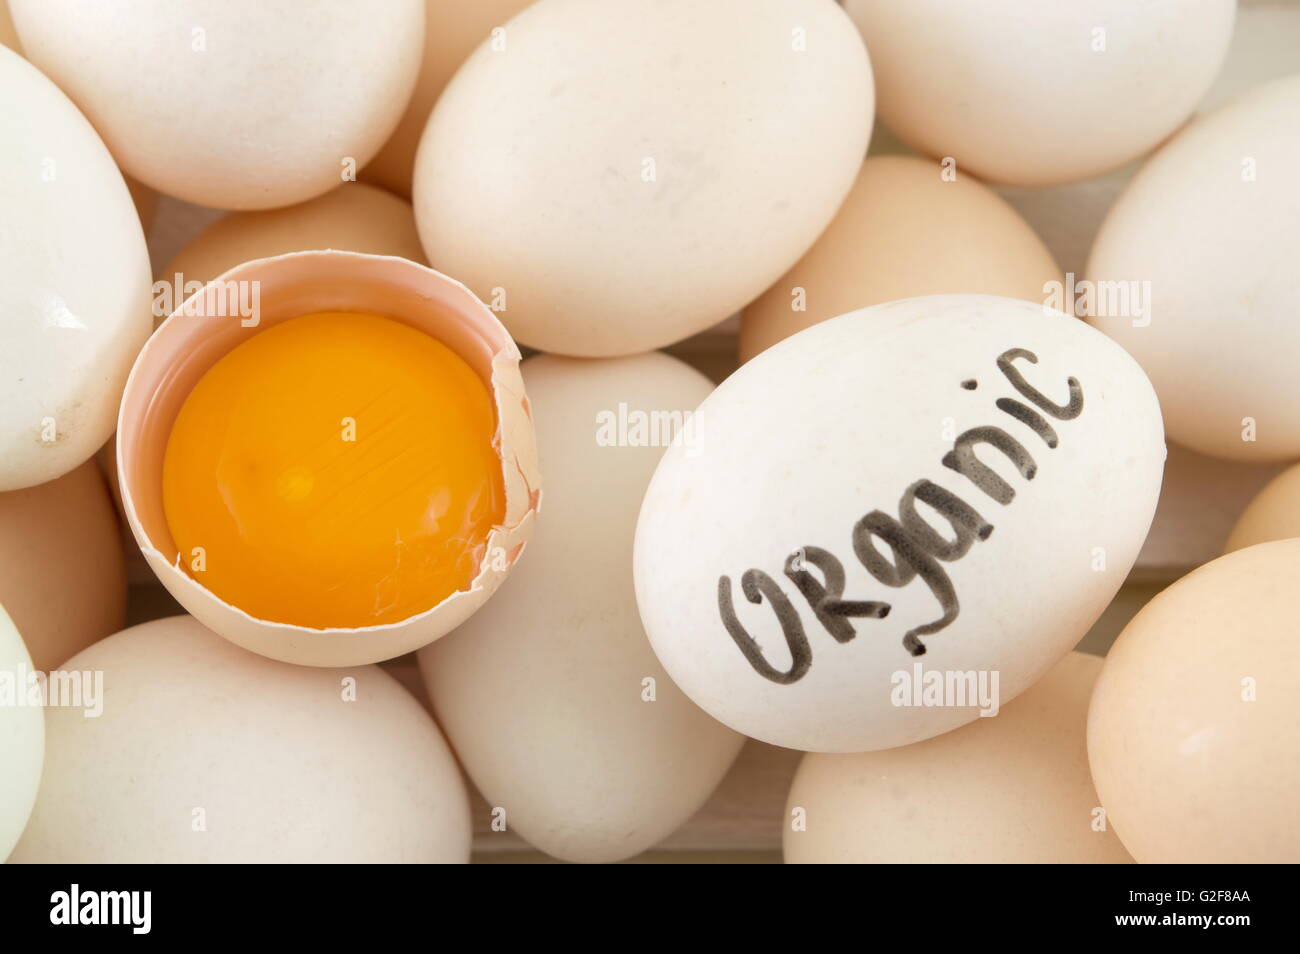 Des œufs frais avec une cassée. Oeufs biologiques Banque D'Images